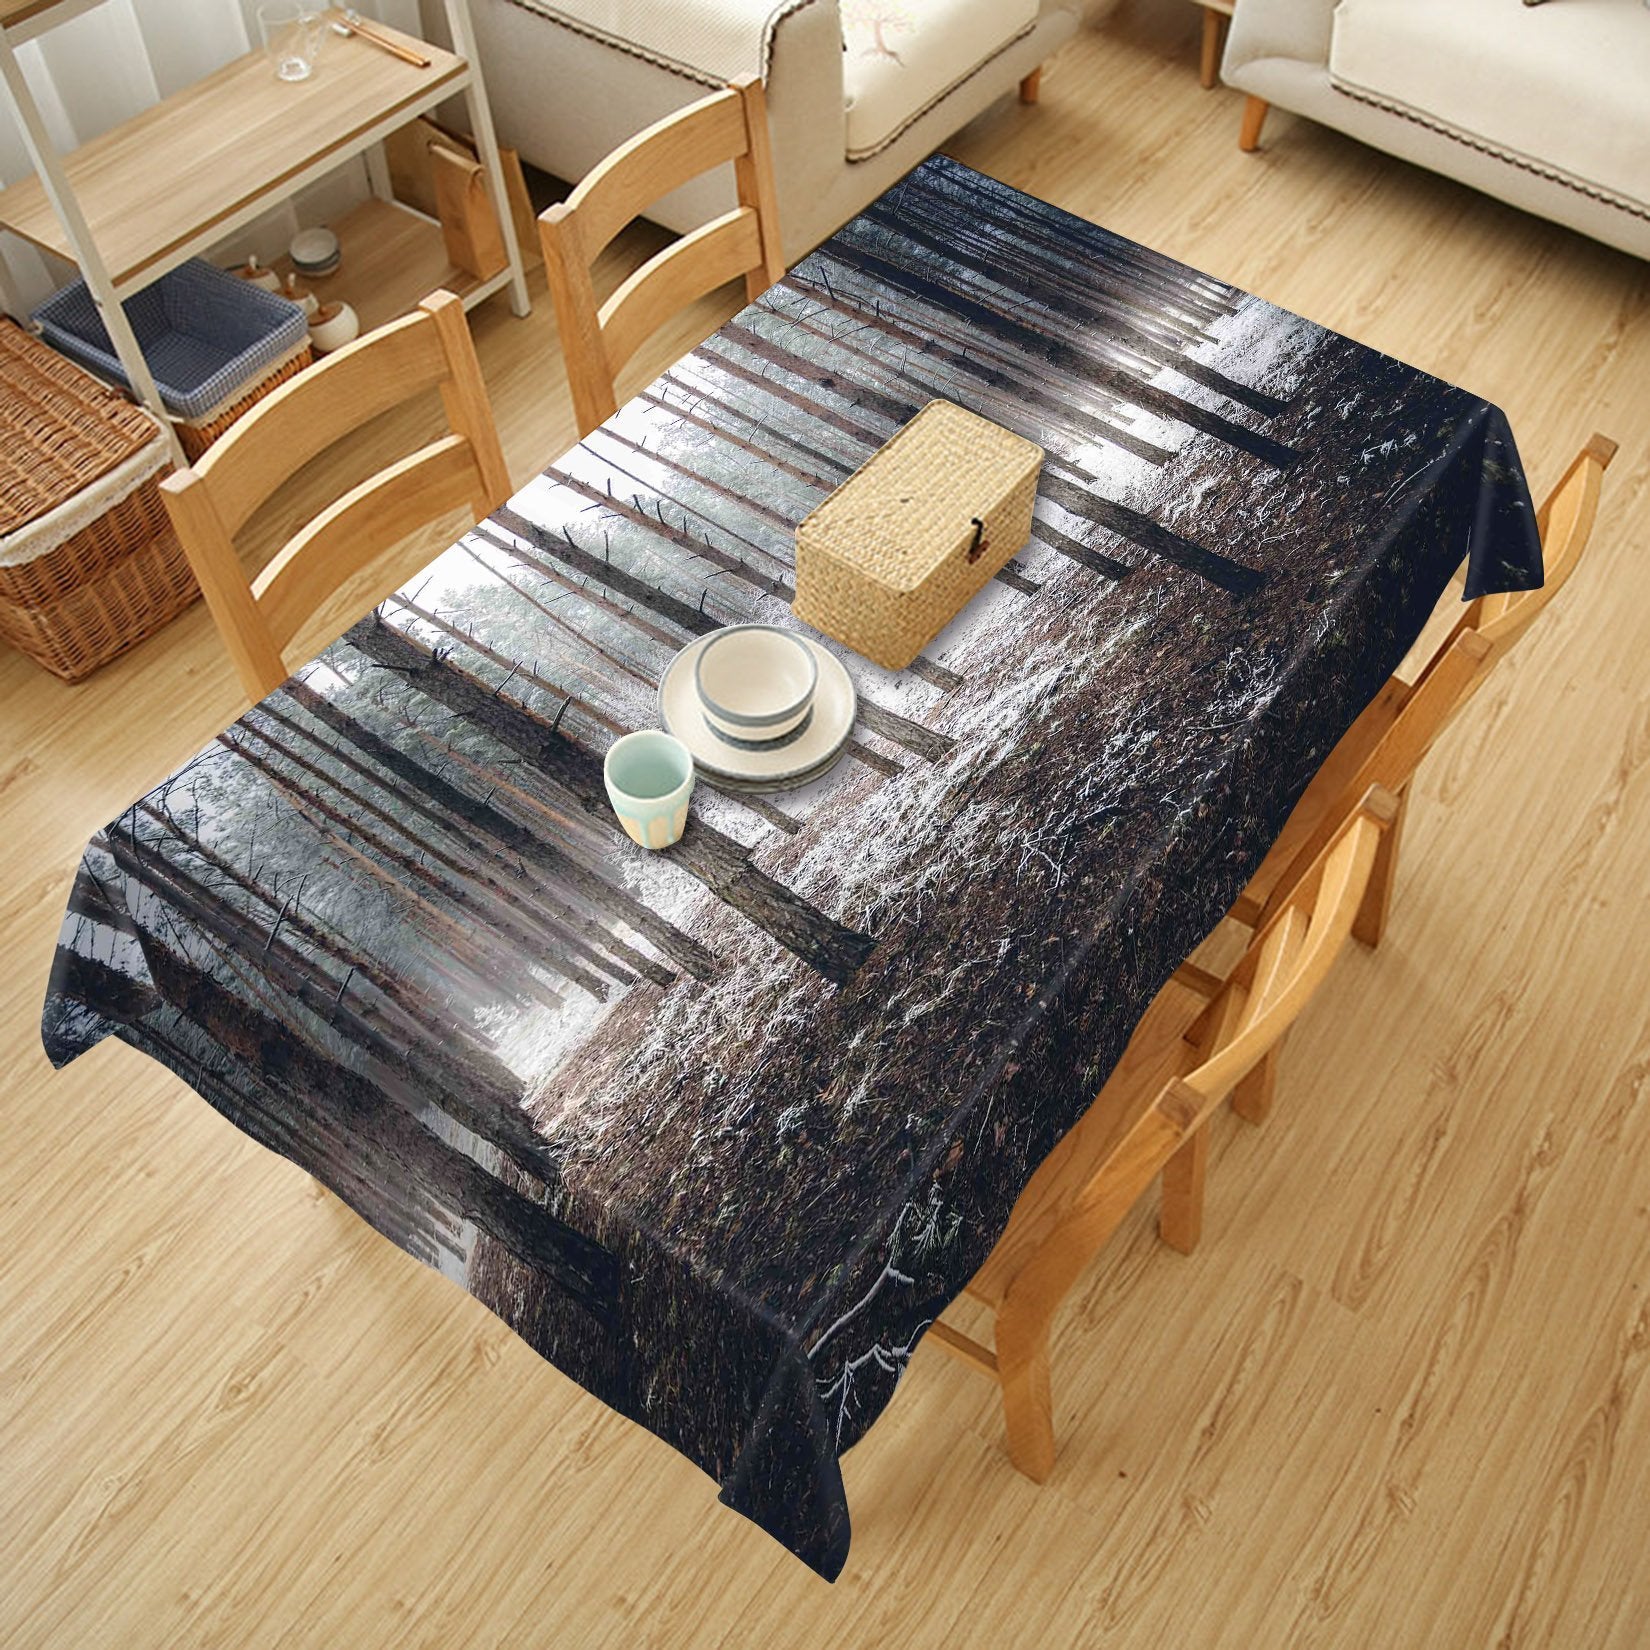 3D Frozen Forest 470 Tablecloths Wallpaper AJ Wallpaper 